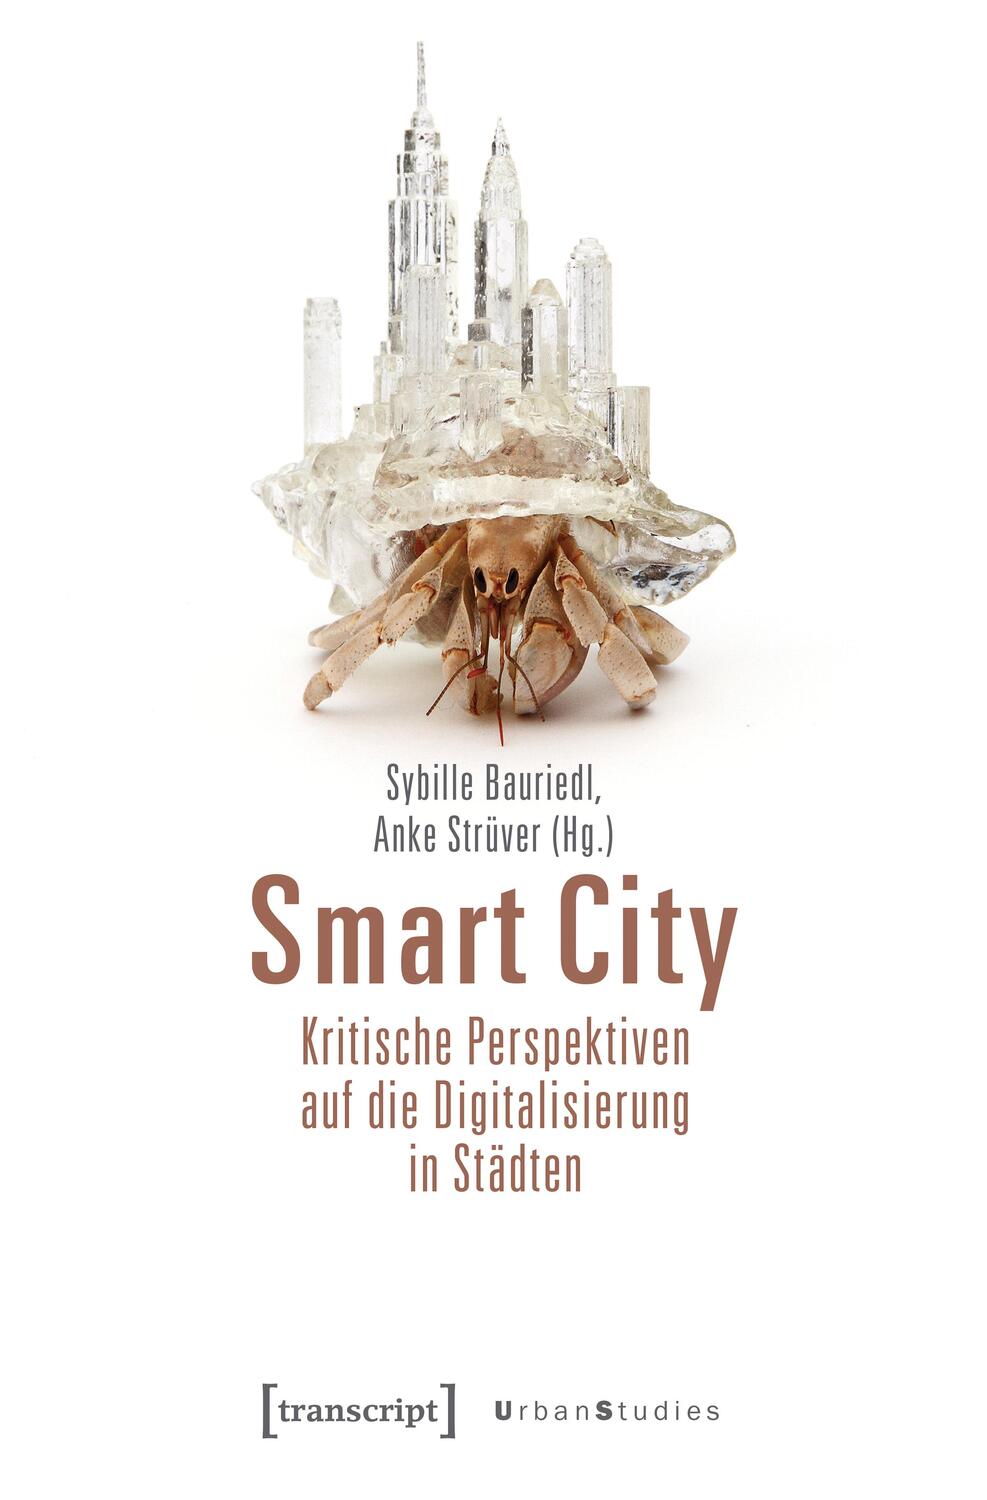 Smart City - Kritische Perspektiven auf die Digitalisierung in Städten - Bauriedl, Sybille